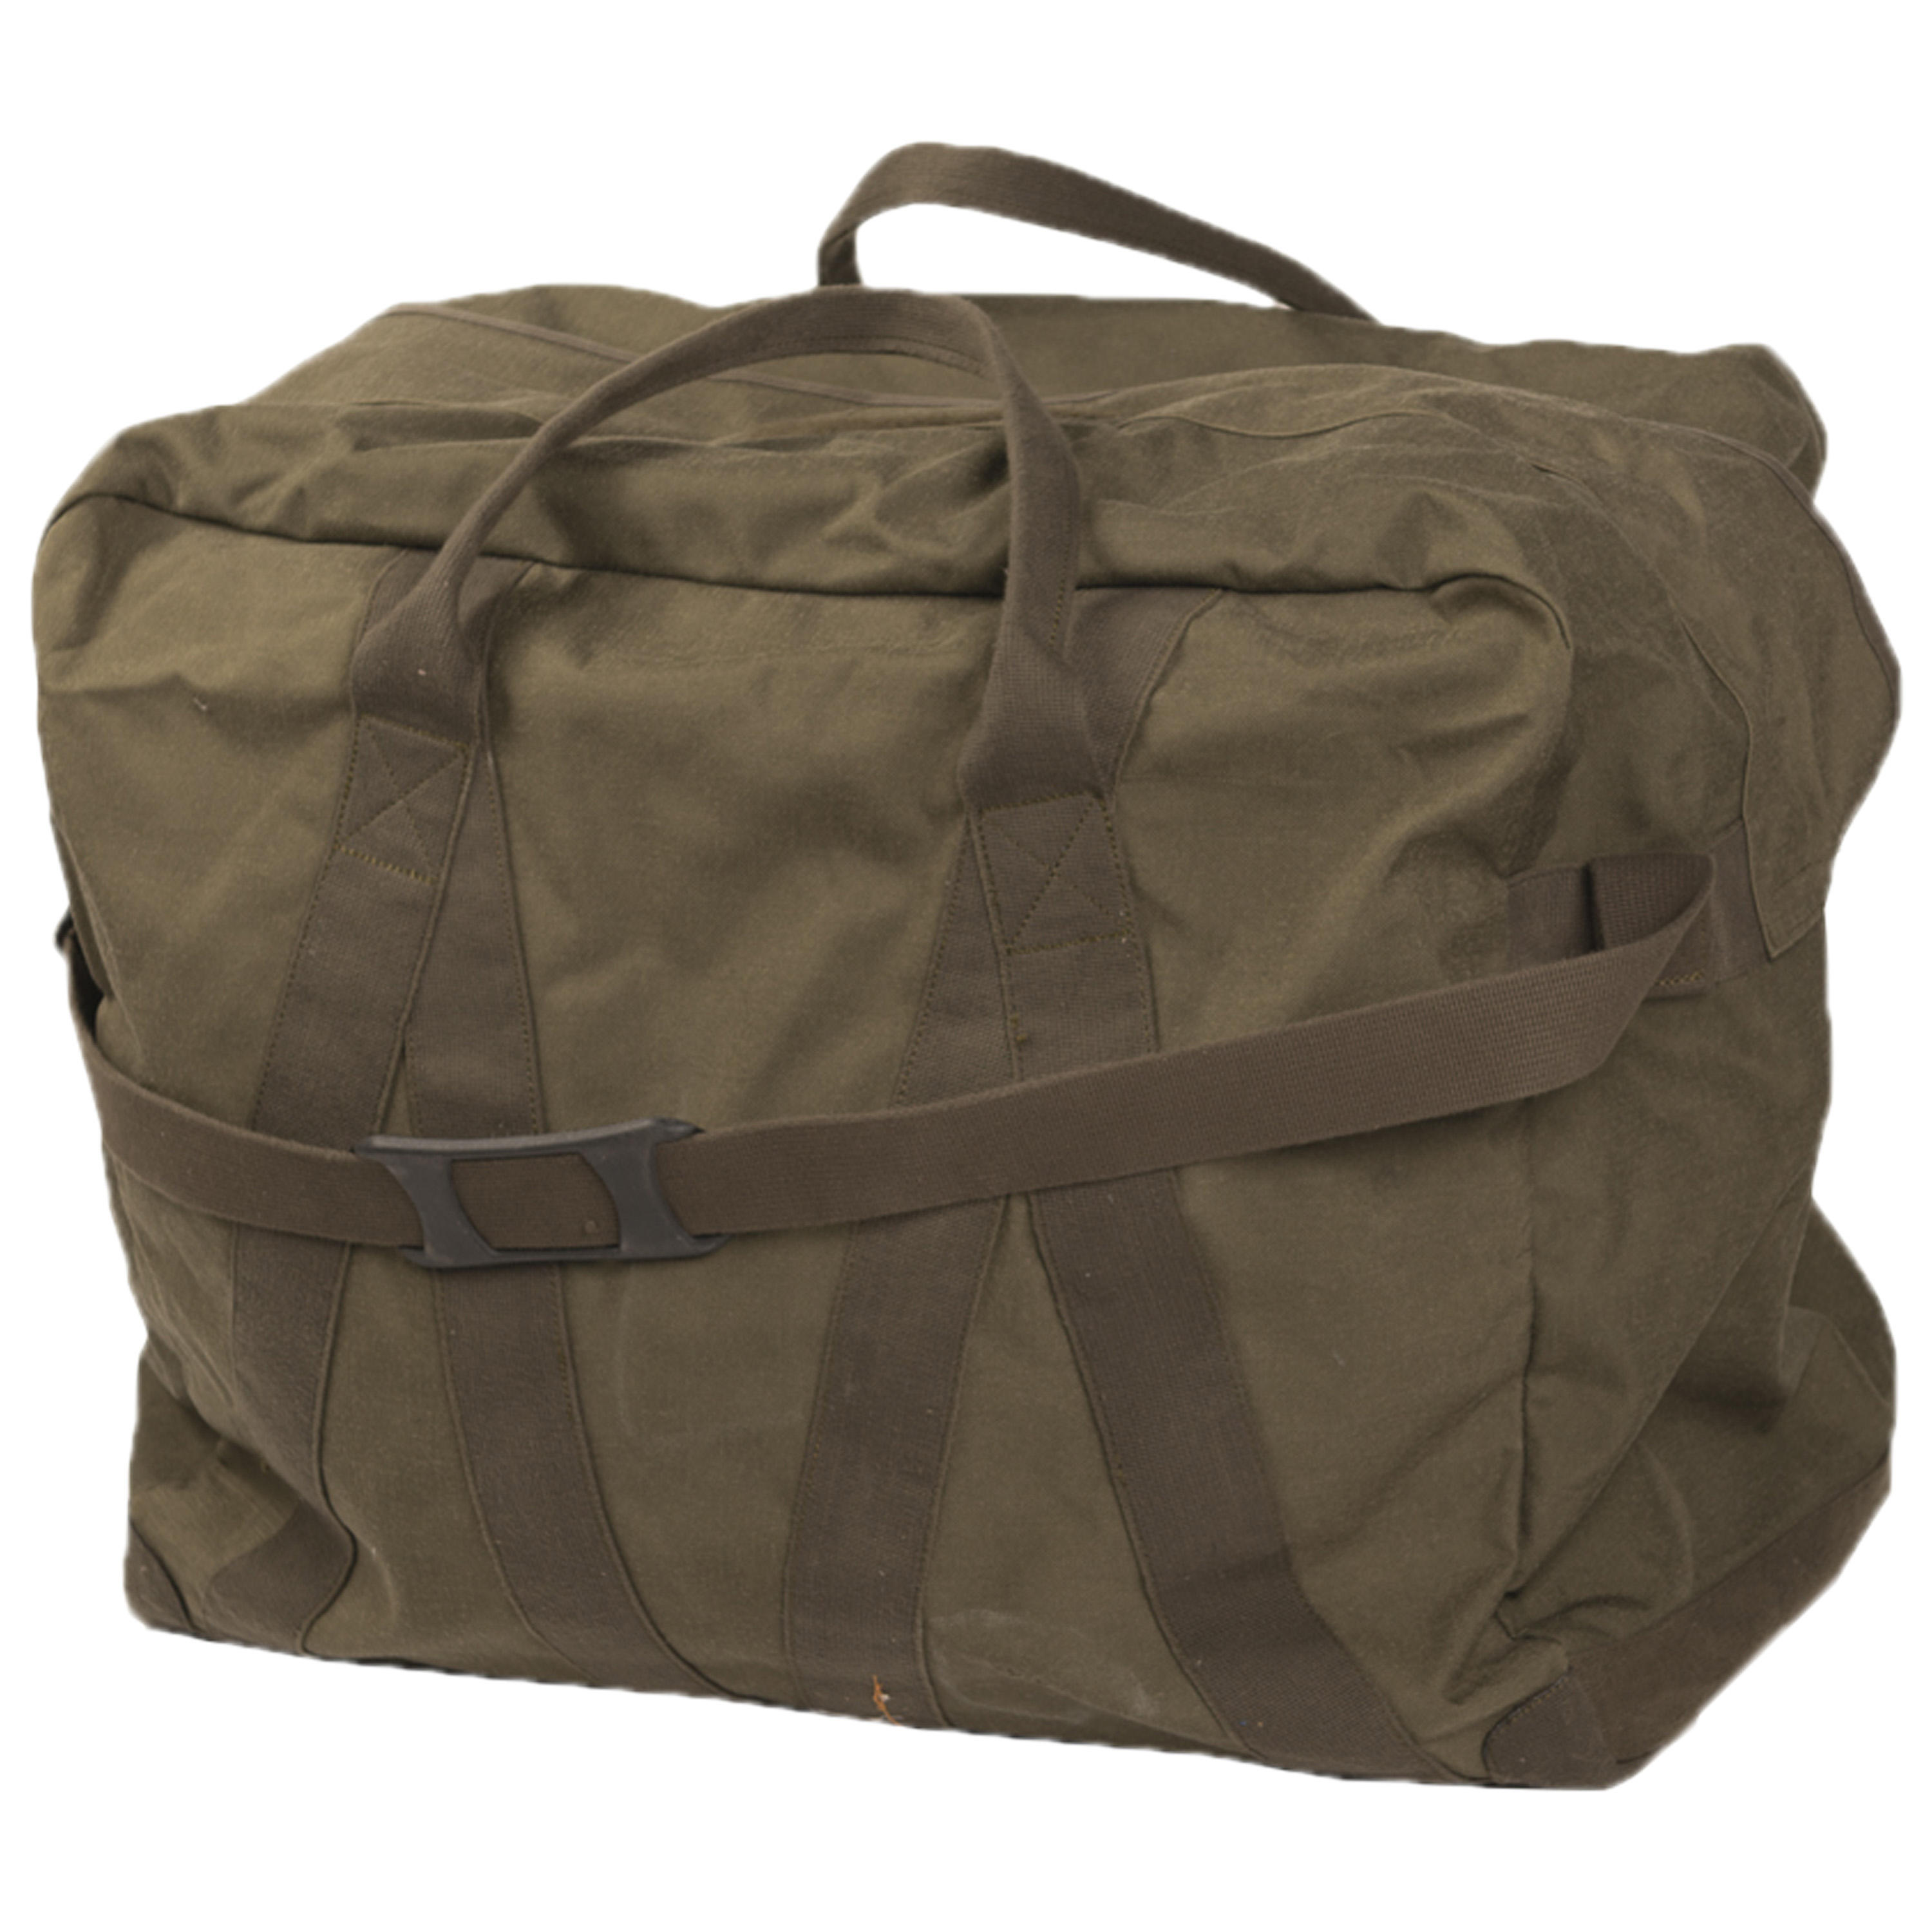 Tragetasche Deployment Bag 4 Sporttasche Army Tasche Reisetasche oliv 